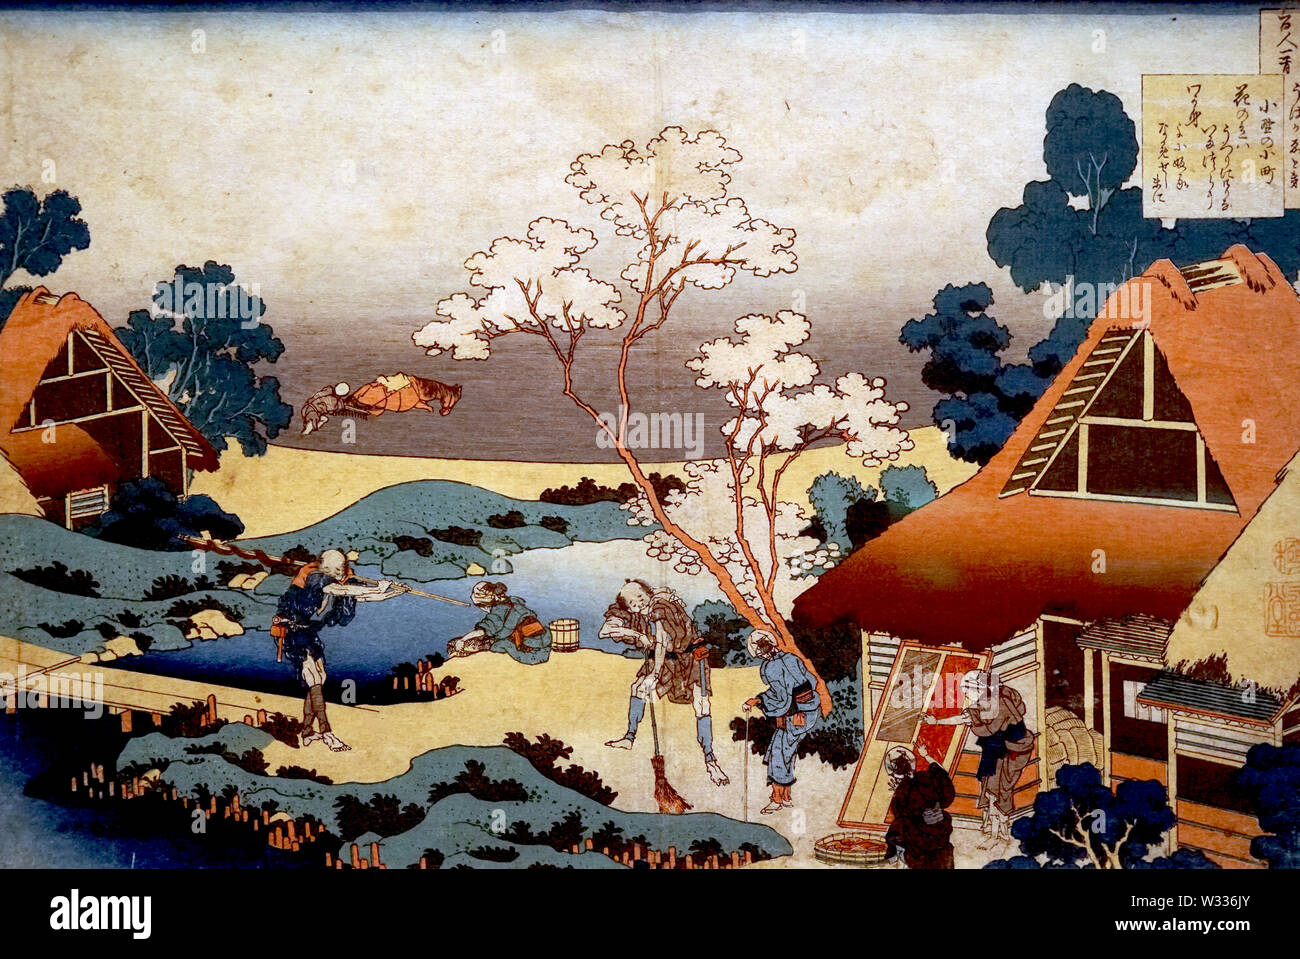 Cent poèmes expliqués par une infirmière : Ono no Komachi, par Katsushika Hokusai, gravure sur bois, période Edo, 19e siècle Banque D'Images